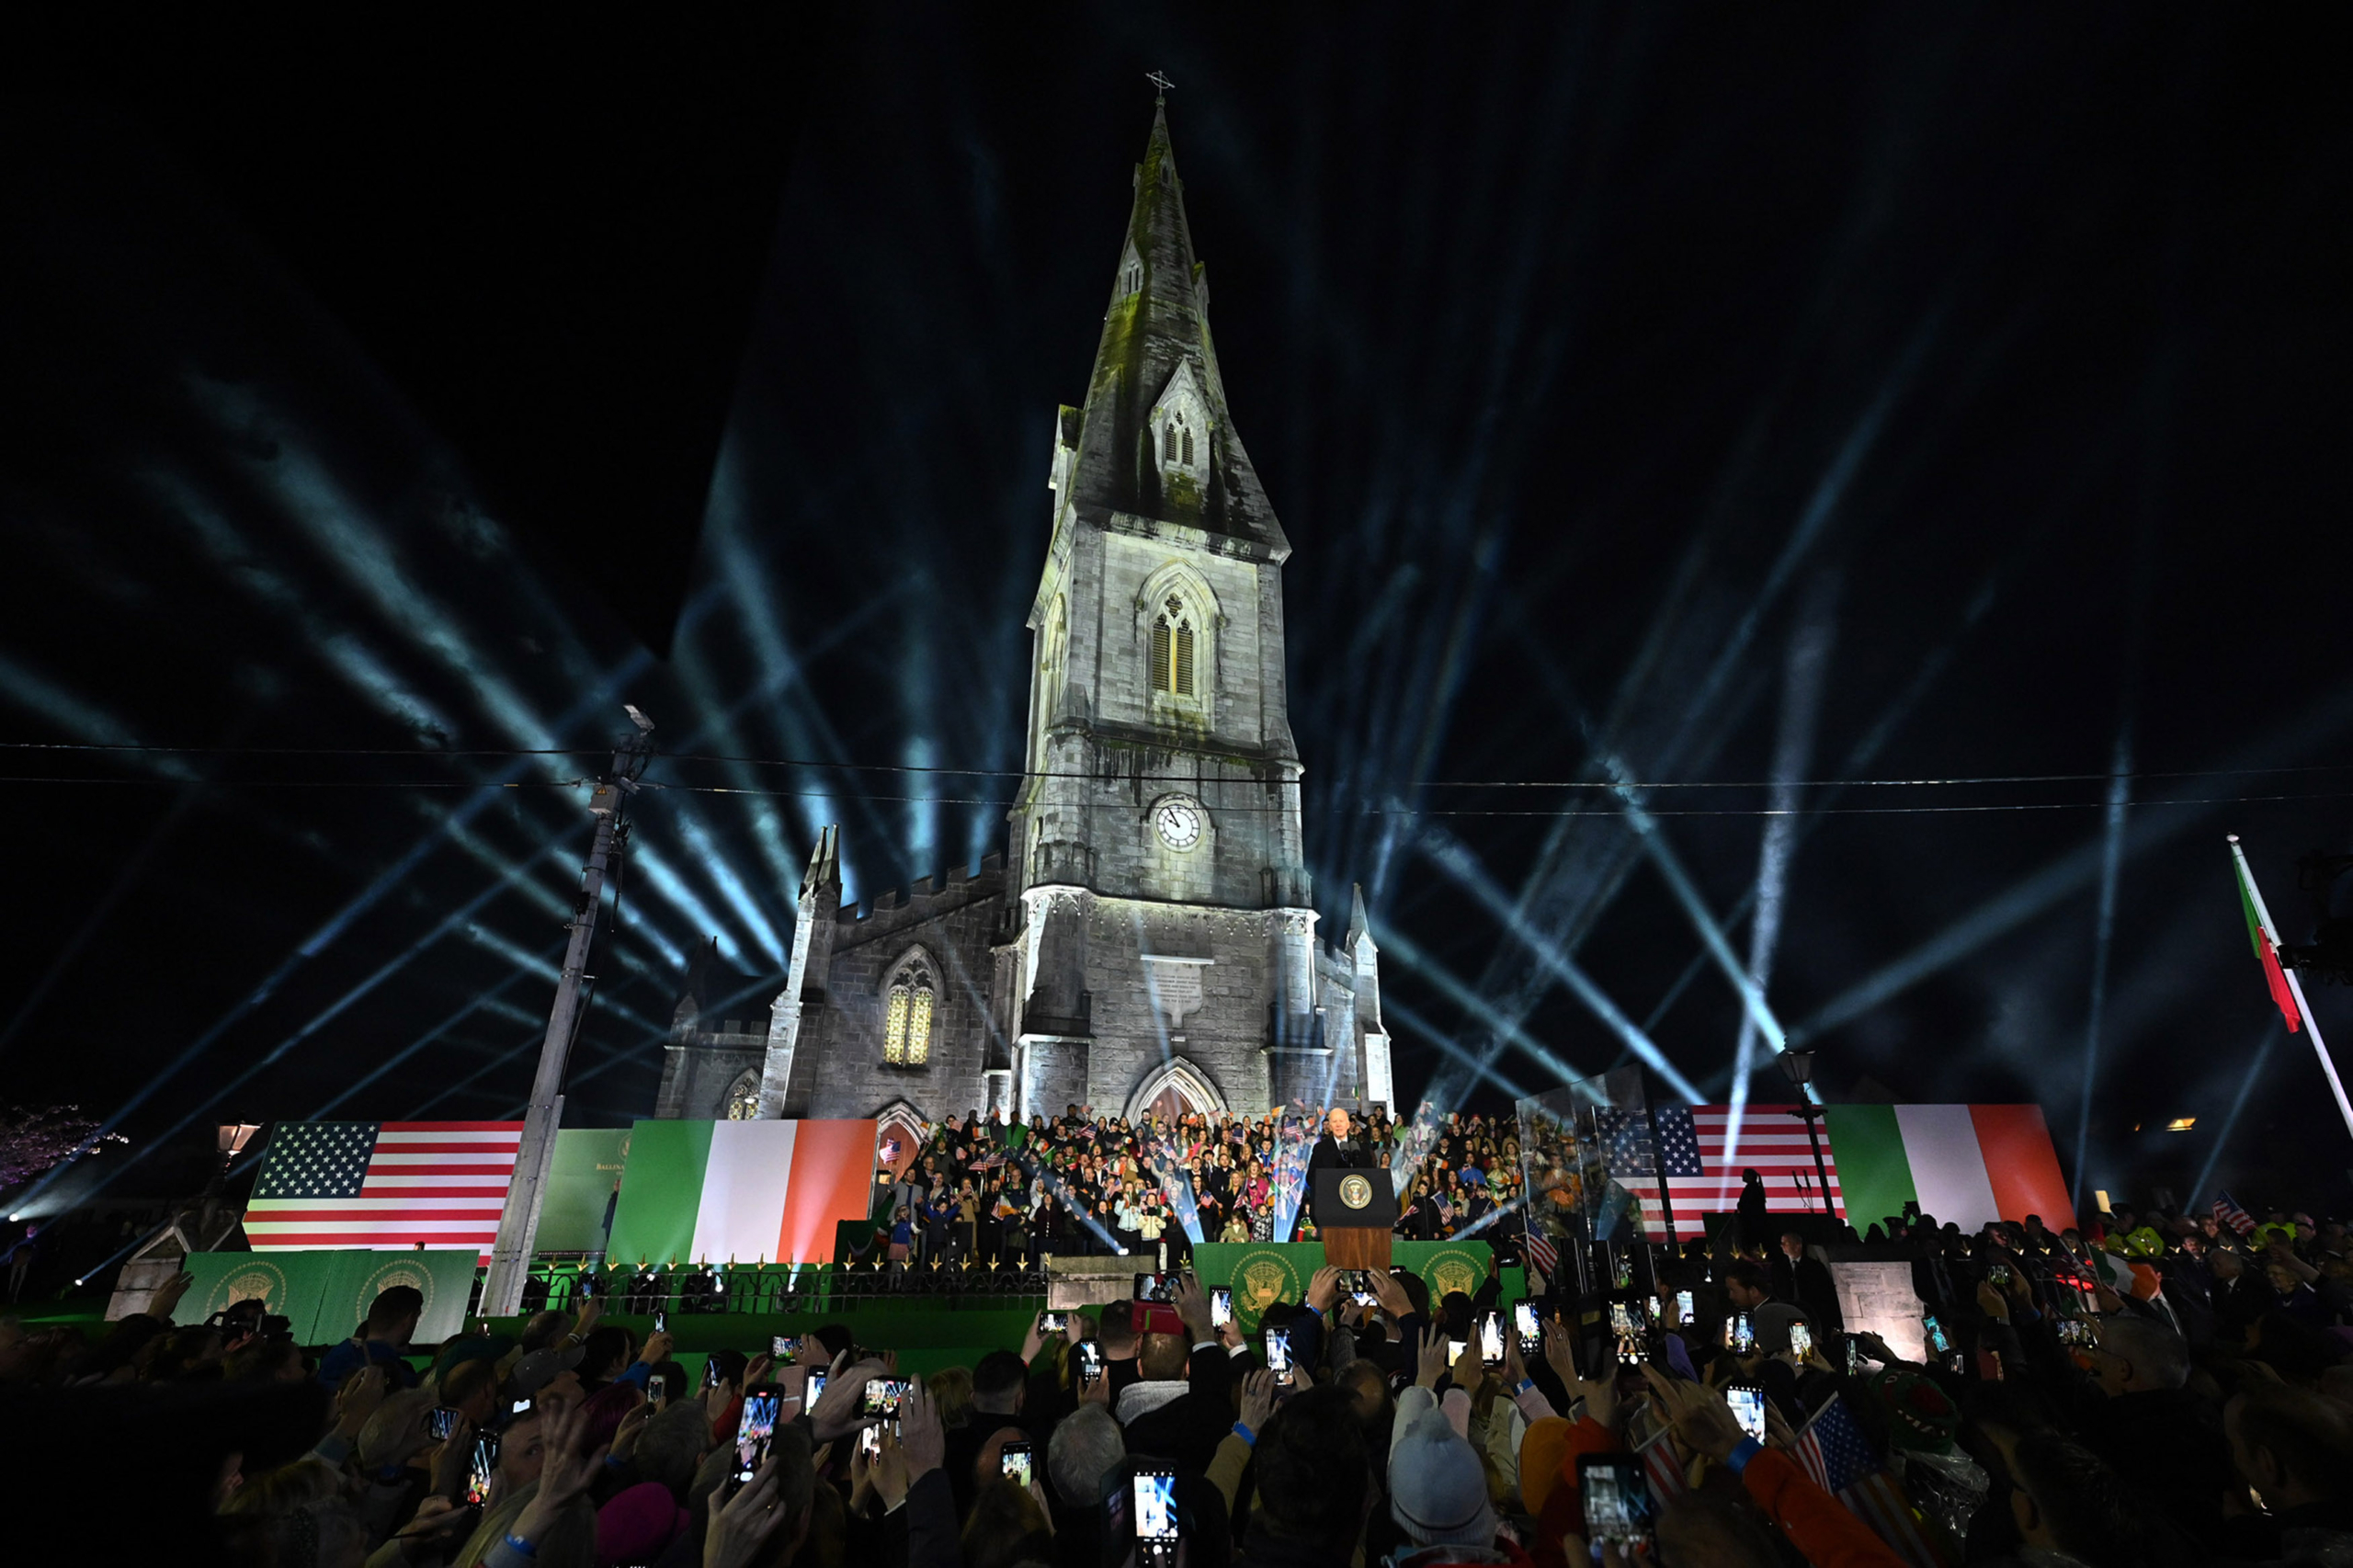 Tổng thống Joe Biden trình bày trước đám đông trong một sự kiện kỷ niệm tại Thánh đường St. Muredach ở Ballina, Ireland hôm 14/04/2023. (Ảnh: Leon Neal/Getty Images)